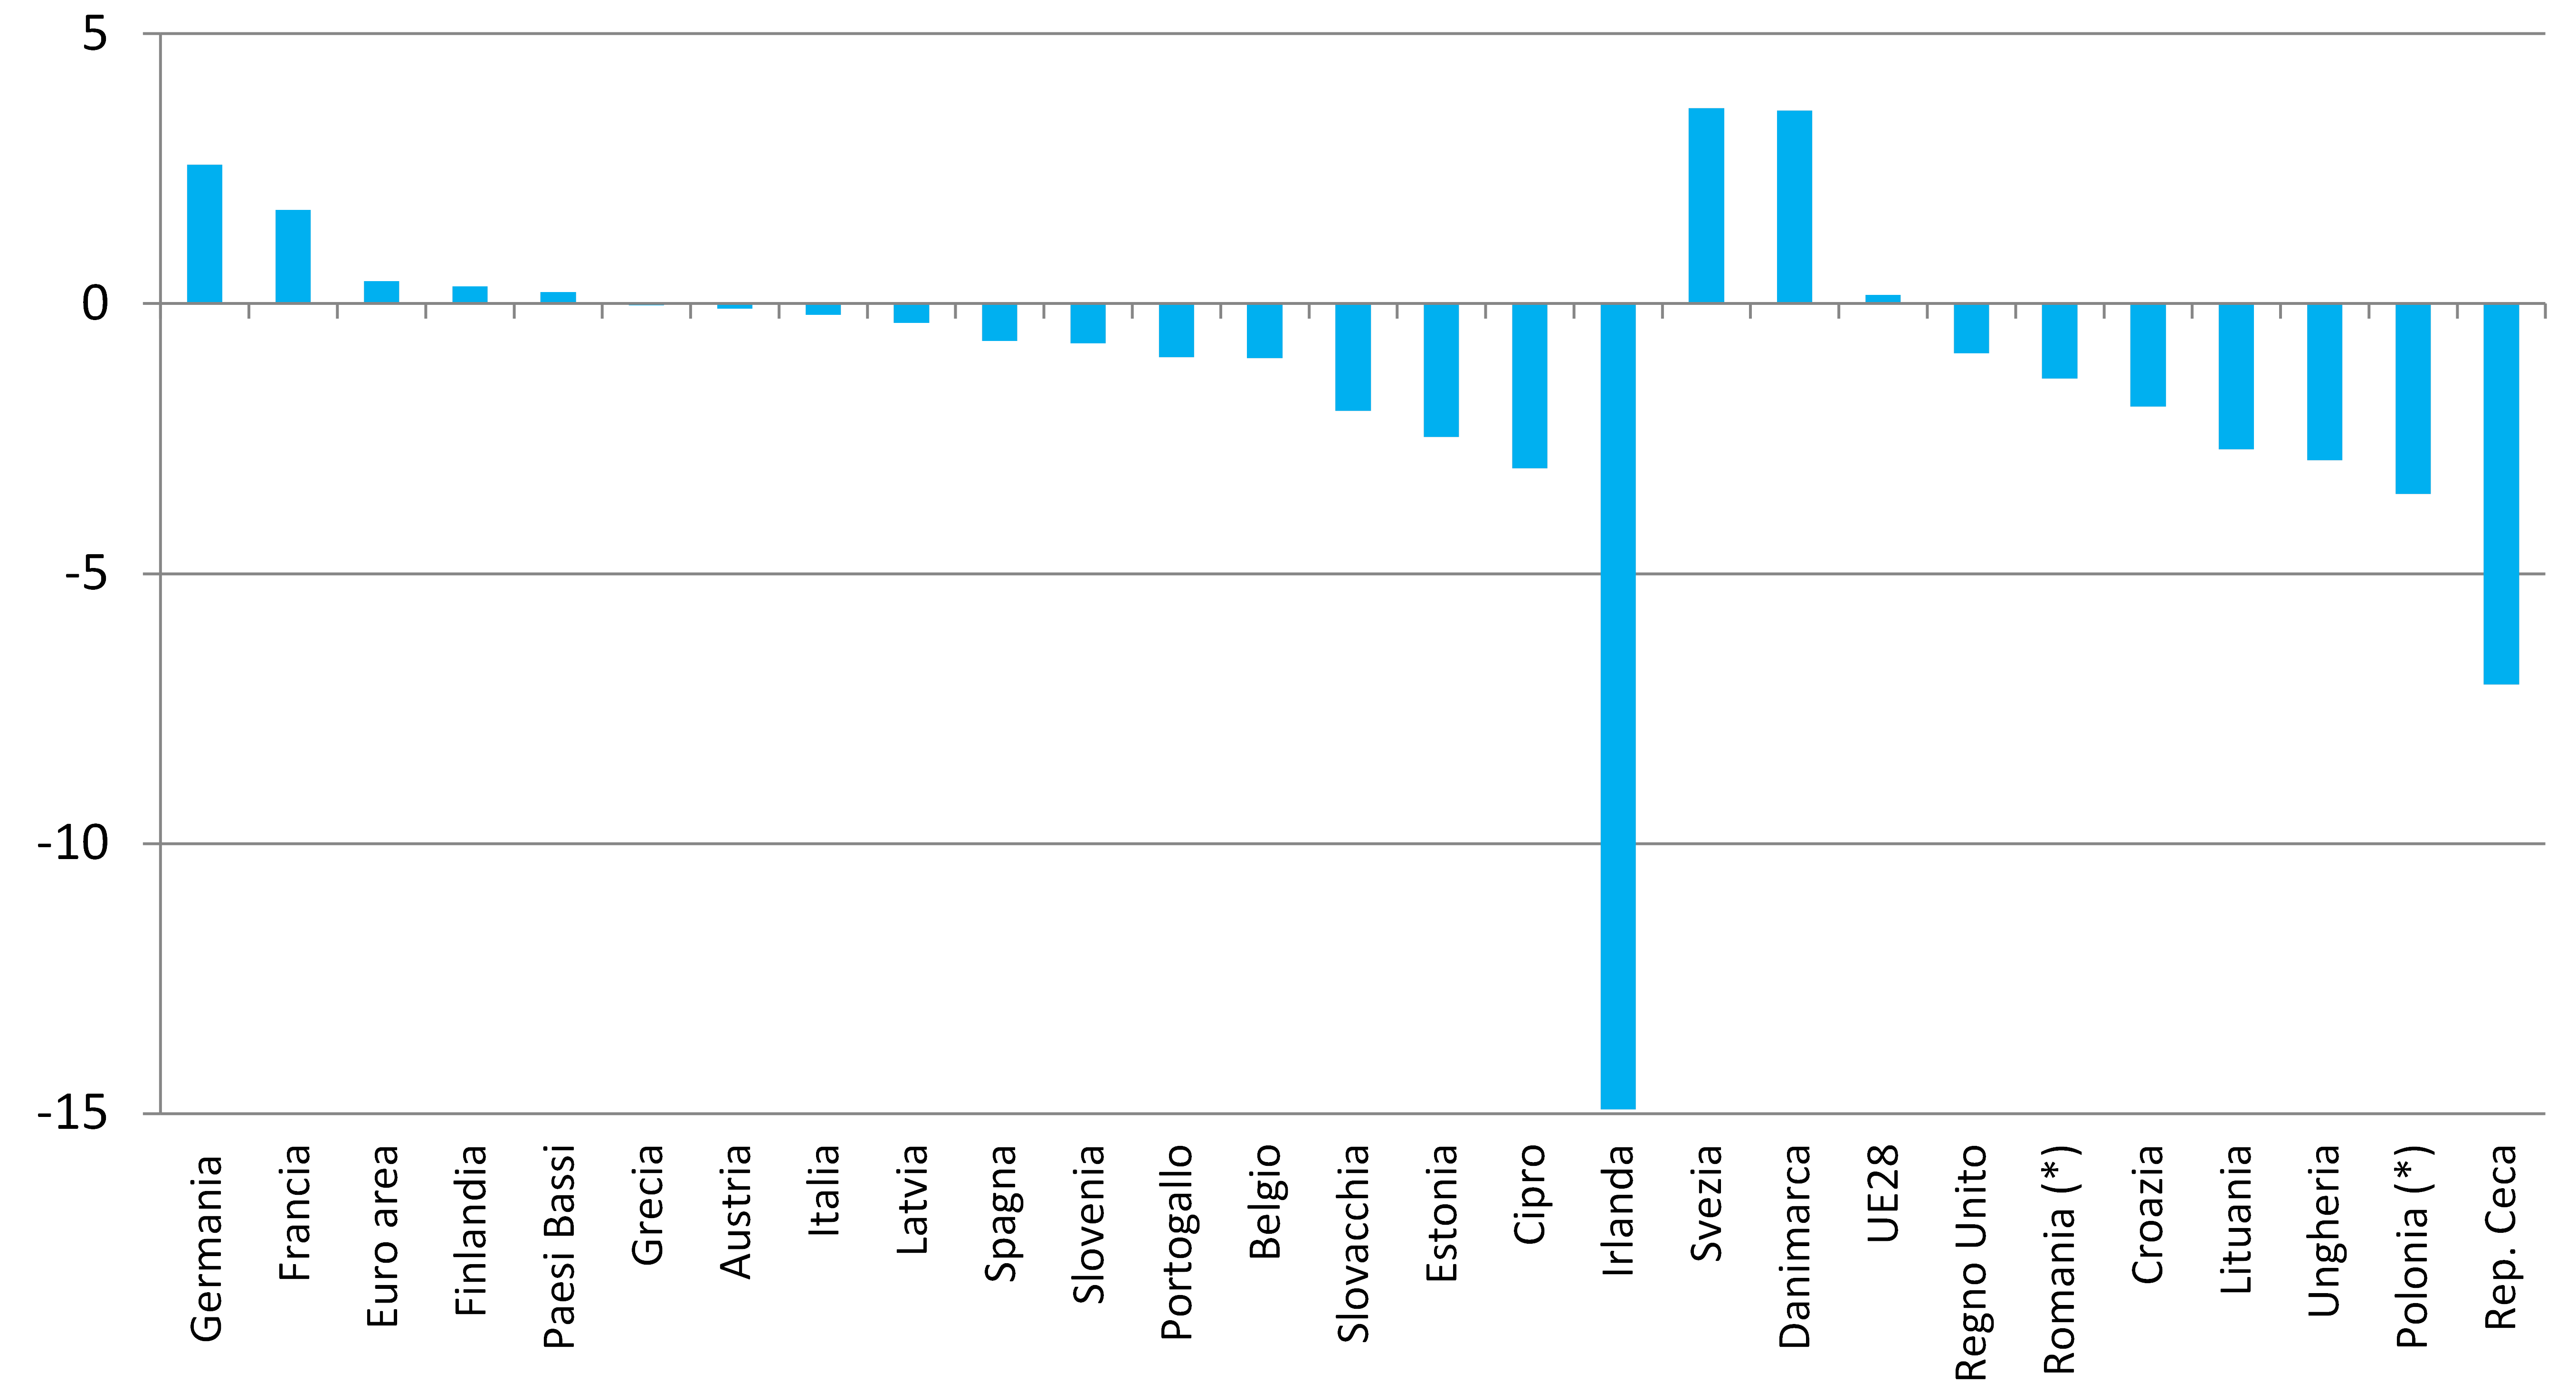 Figura 1 – Rapporto tra reddito nazionale lordo e prodotto interno lordo nell’Unione europea – Anno 2013